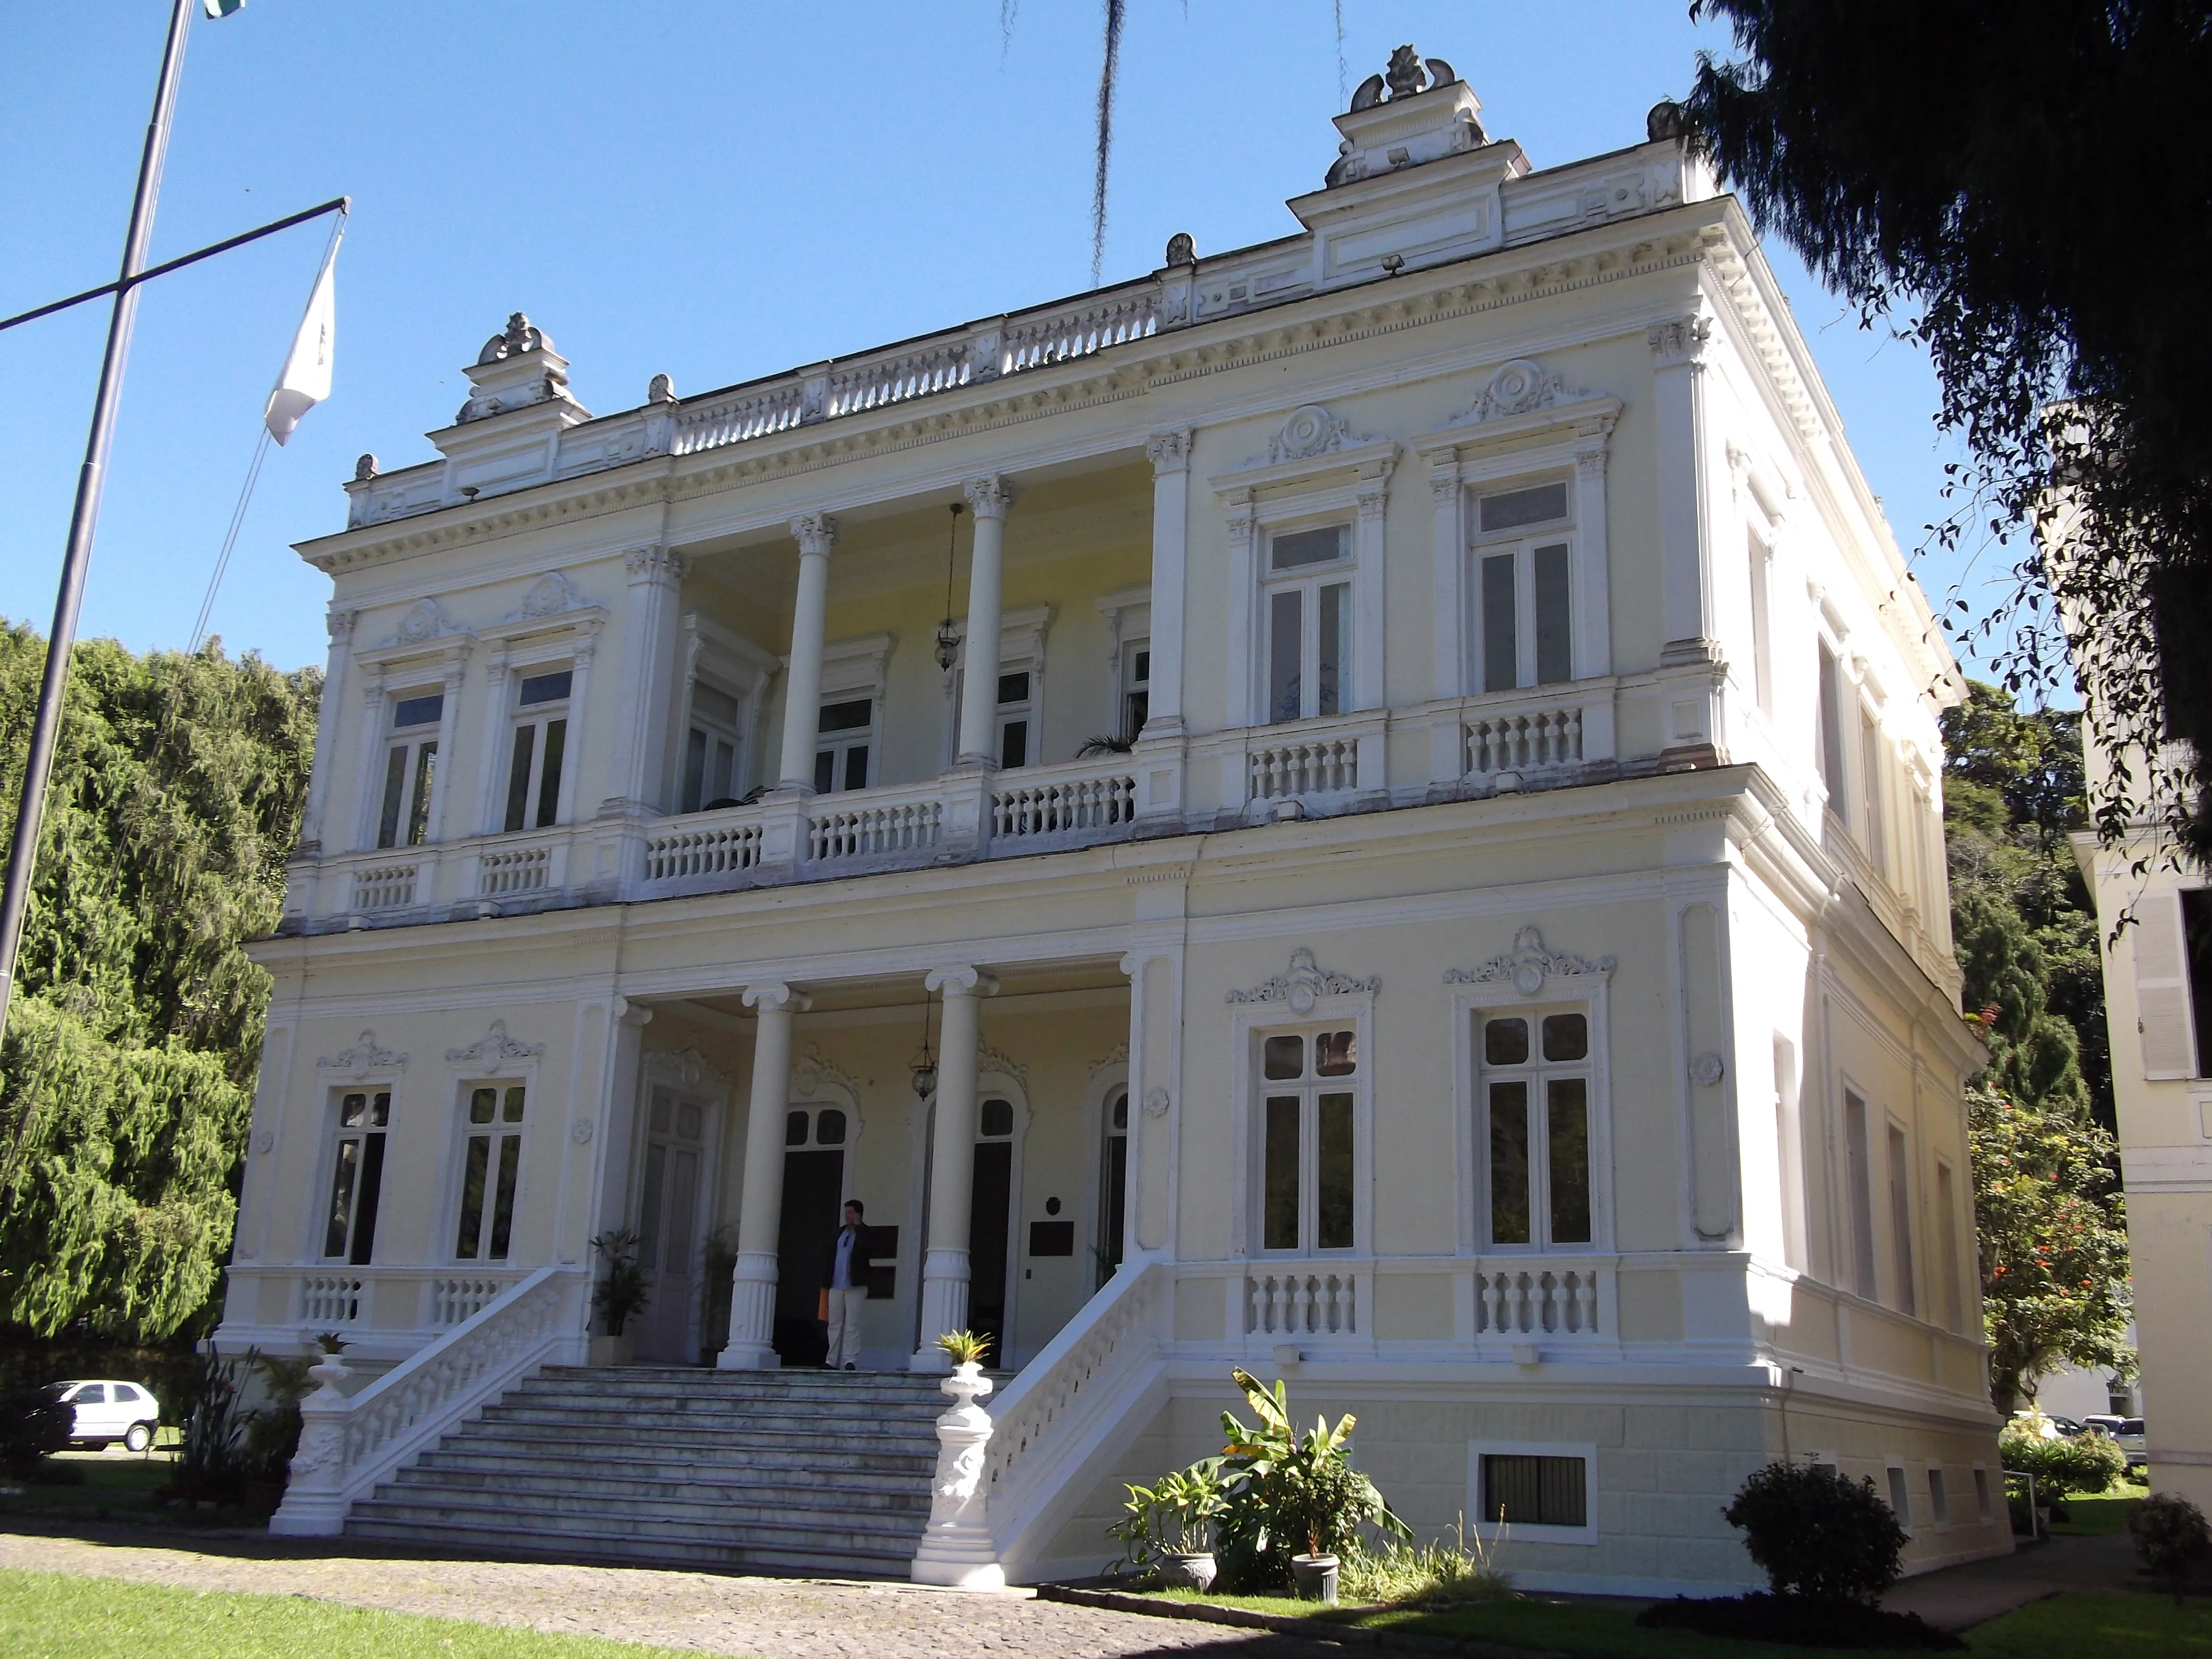 Prefeitura de Petrópolis